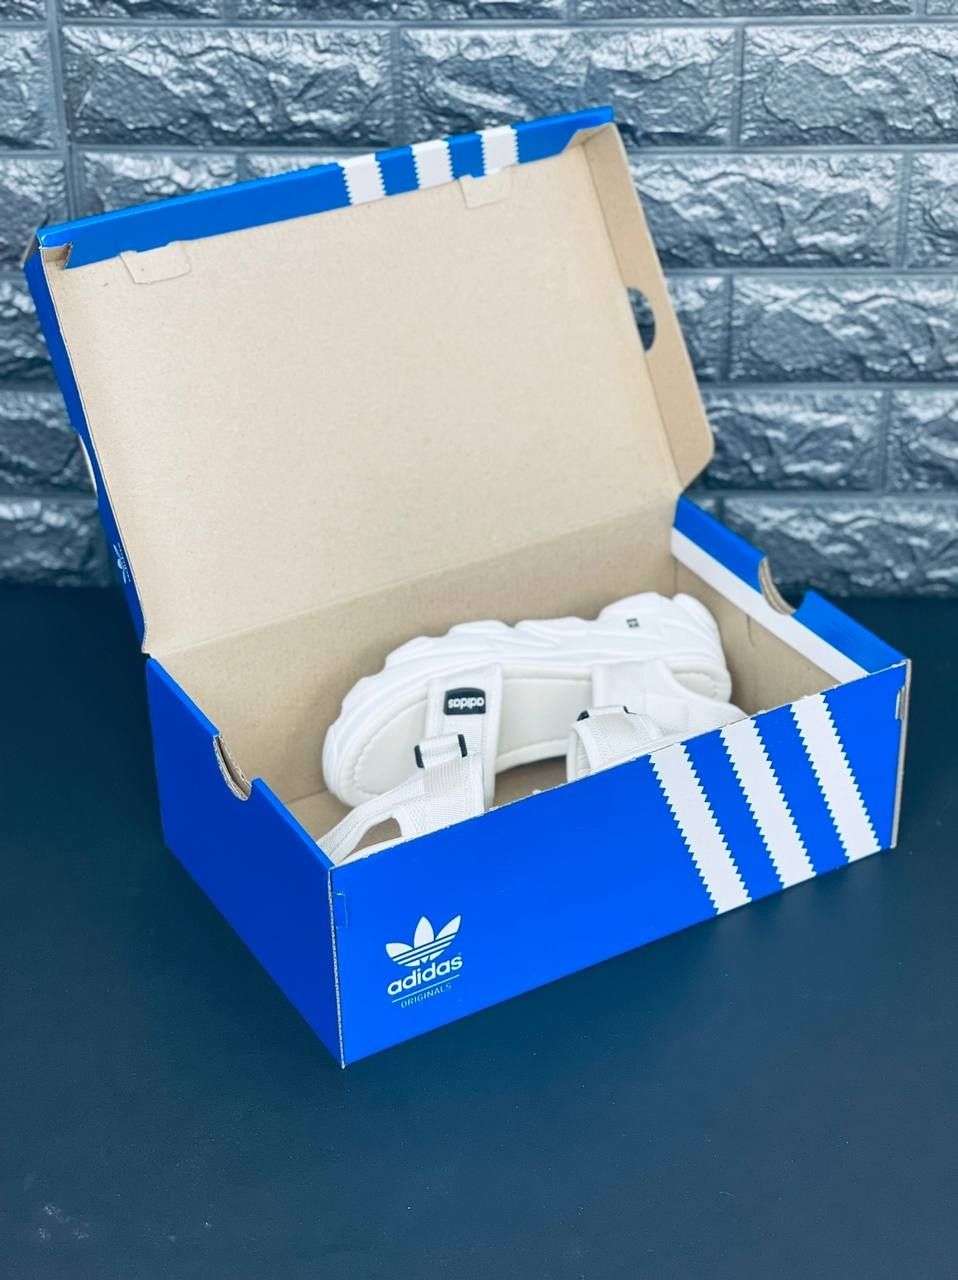 ЖЕНСКИЕ босоножки Adidas сандалии белого цвета Адидас на липучке 35-40